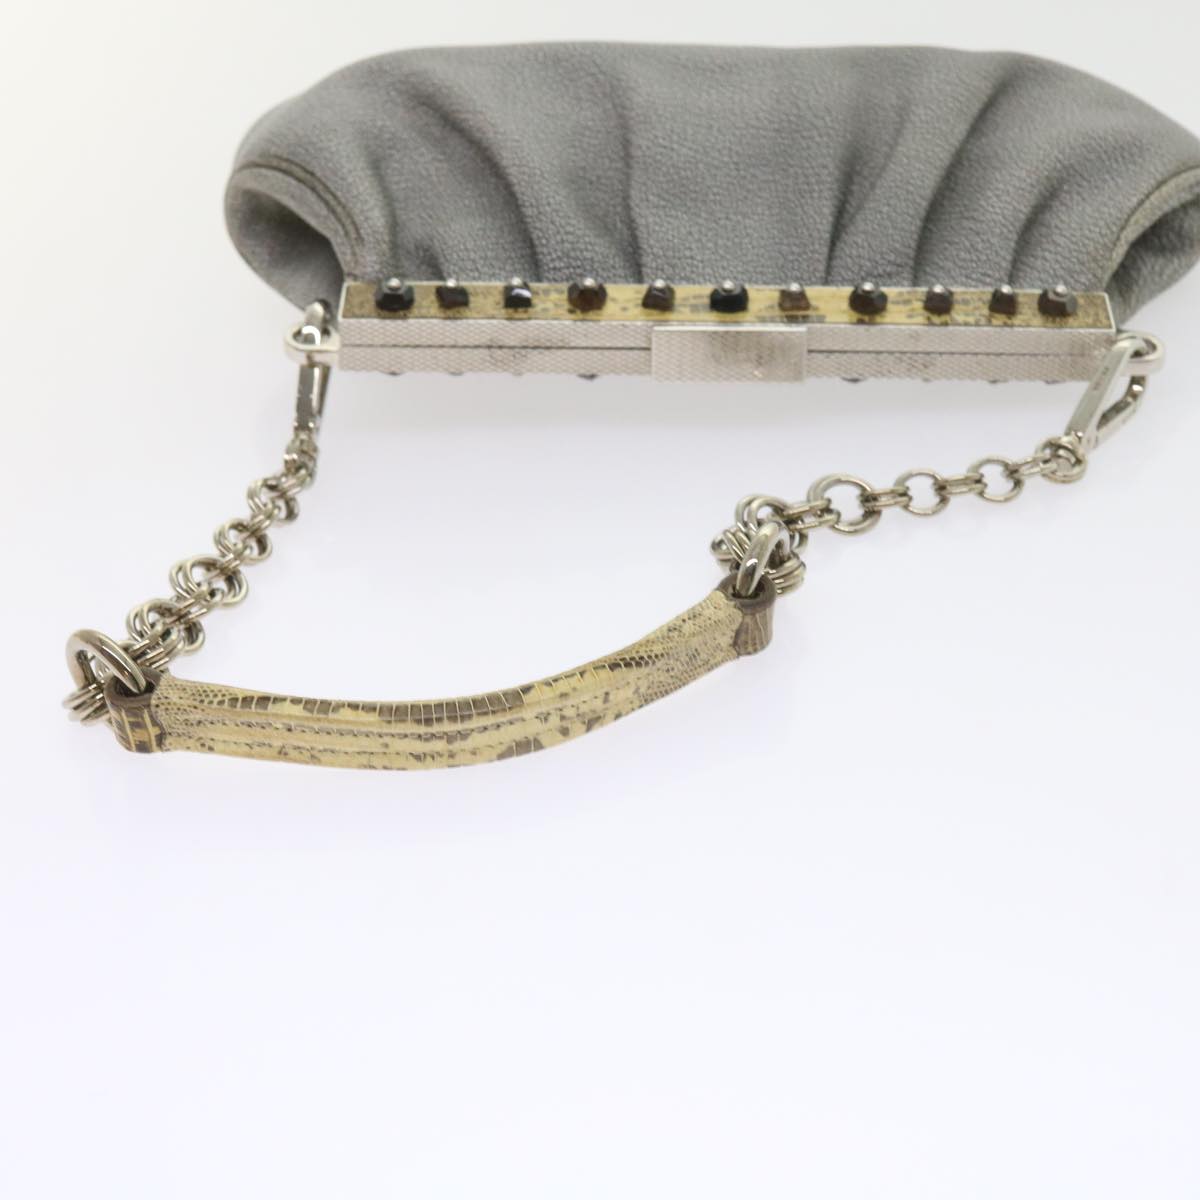 PRADA Gamaguchi Chain Shoulder Bag Leather Gray Auth ar10648B